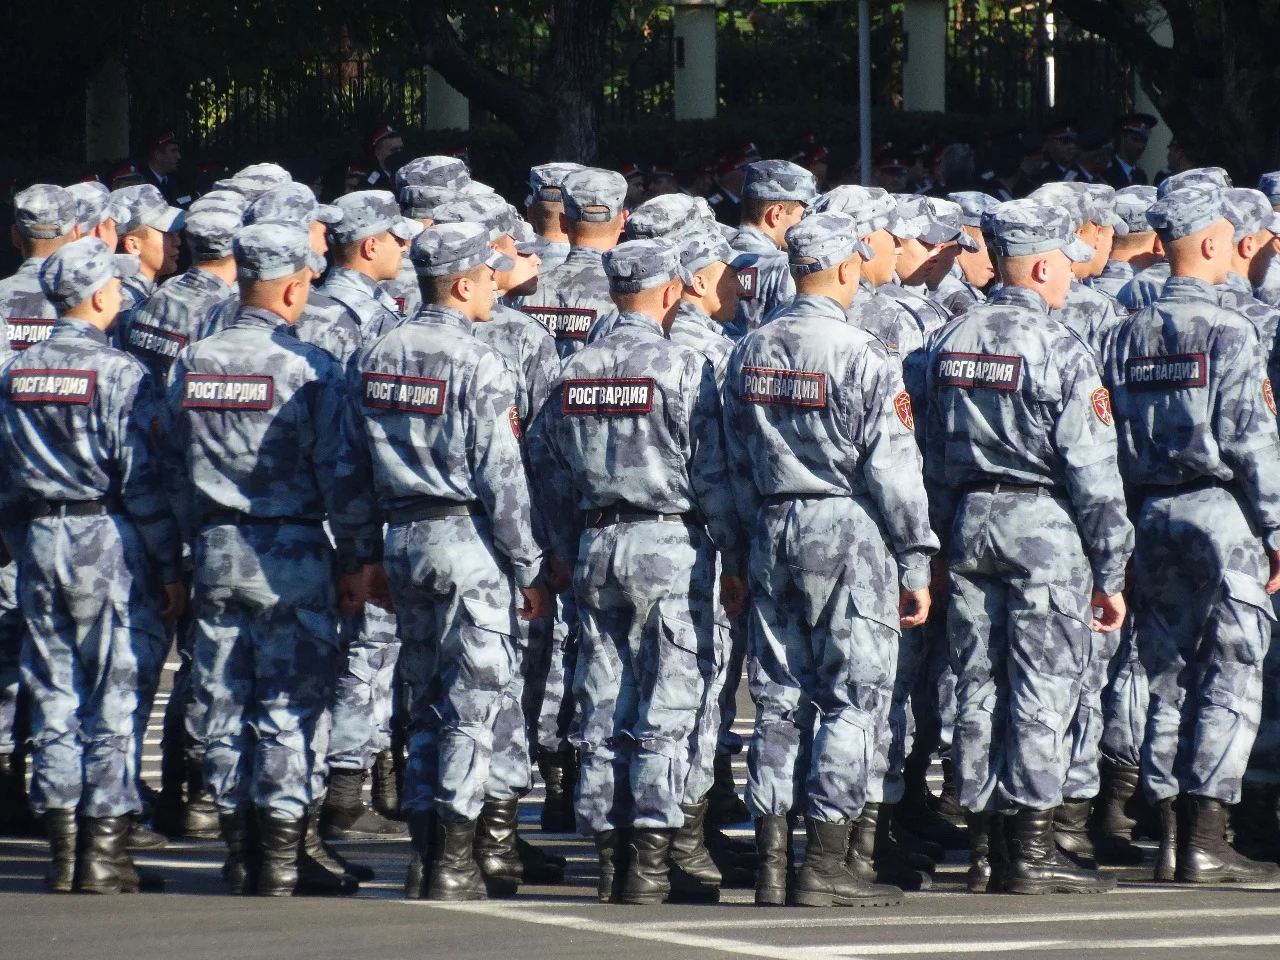 Хинштейн: Росгвардия проверит документы зачинщиков конфликта под Ростовом после резонансного нападения